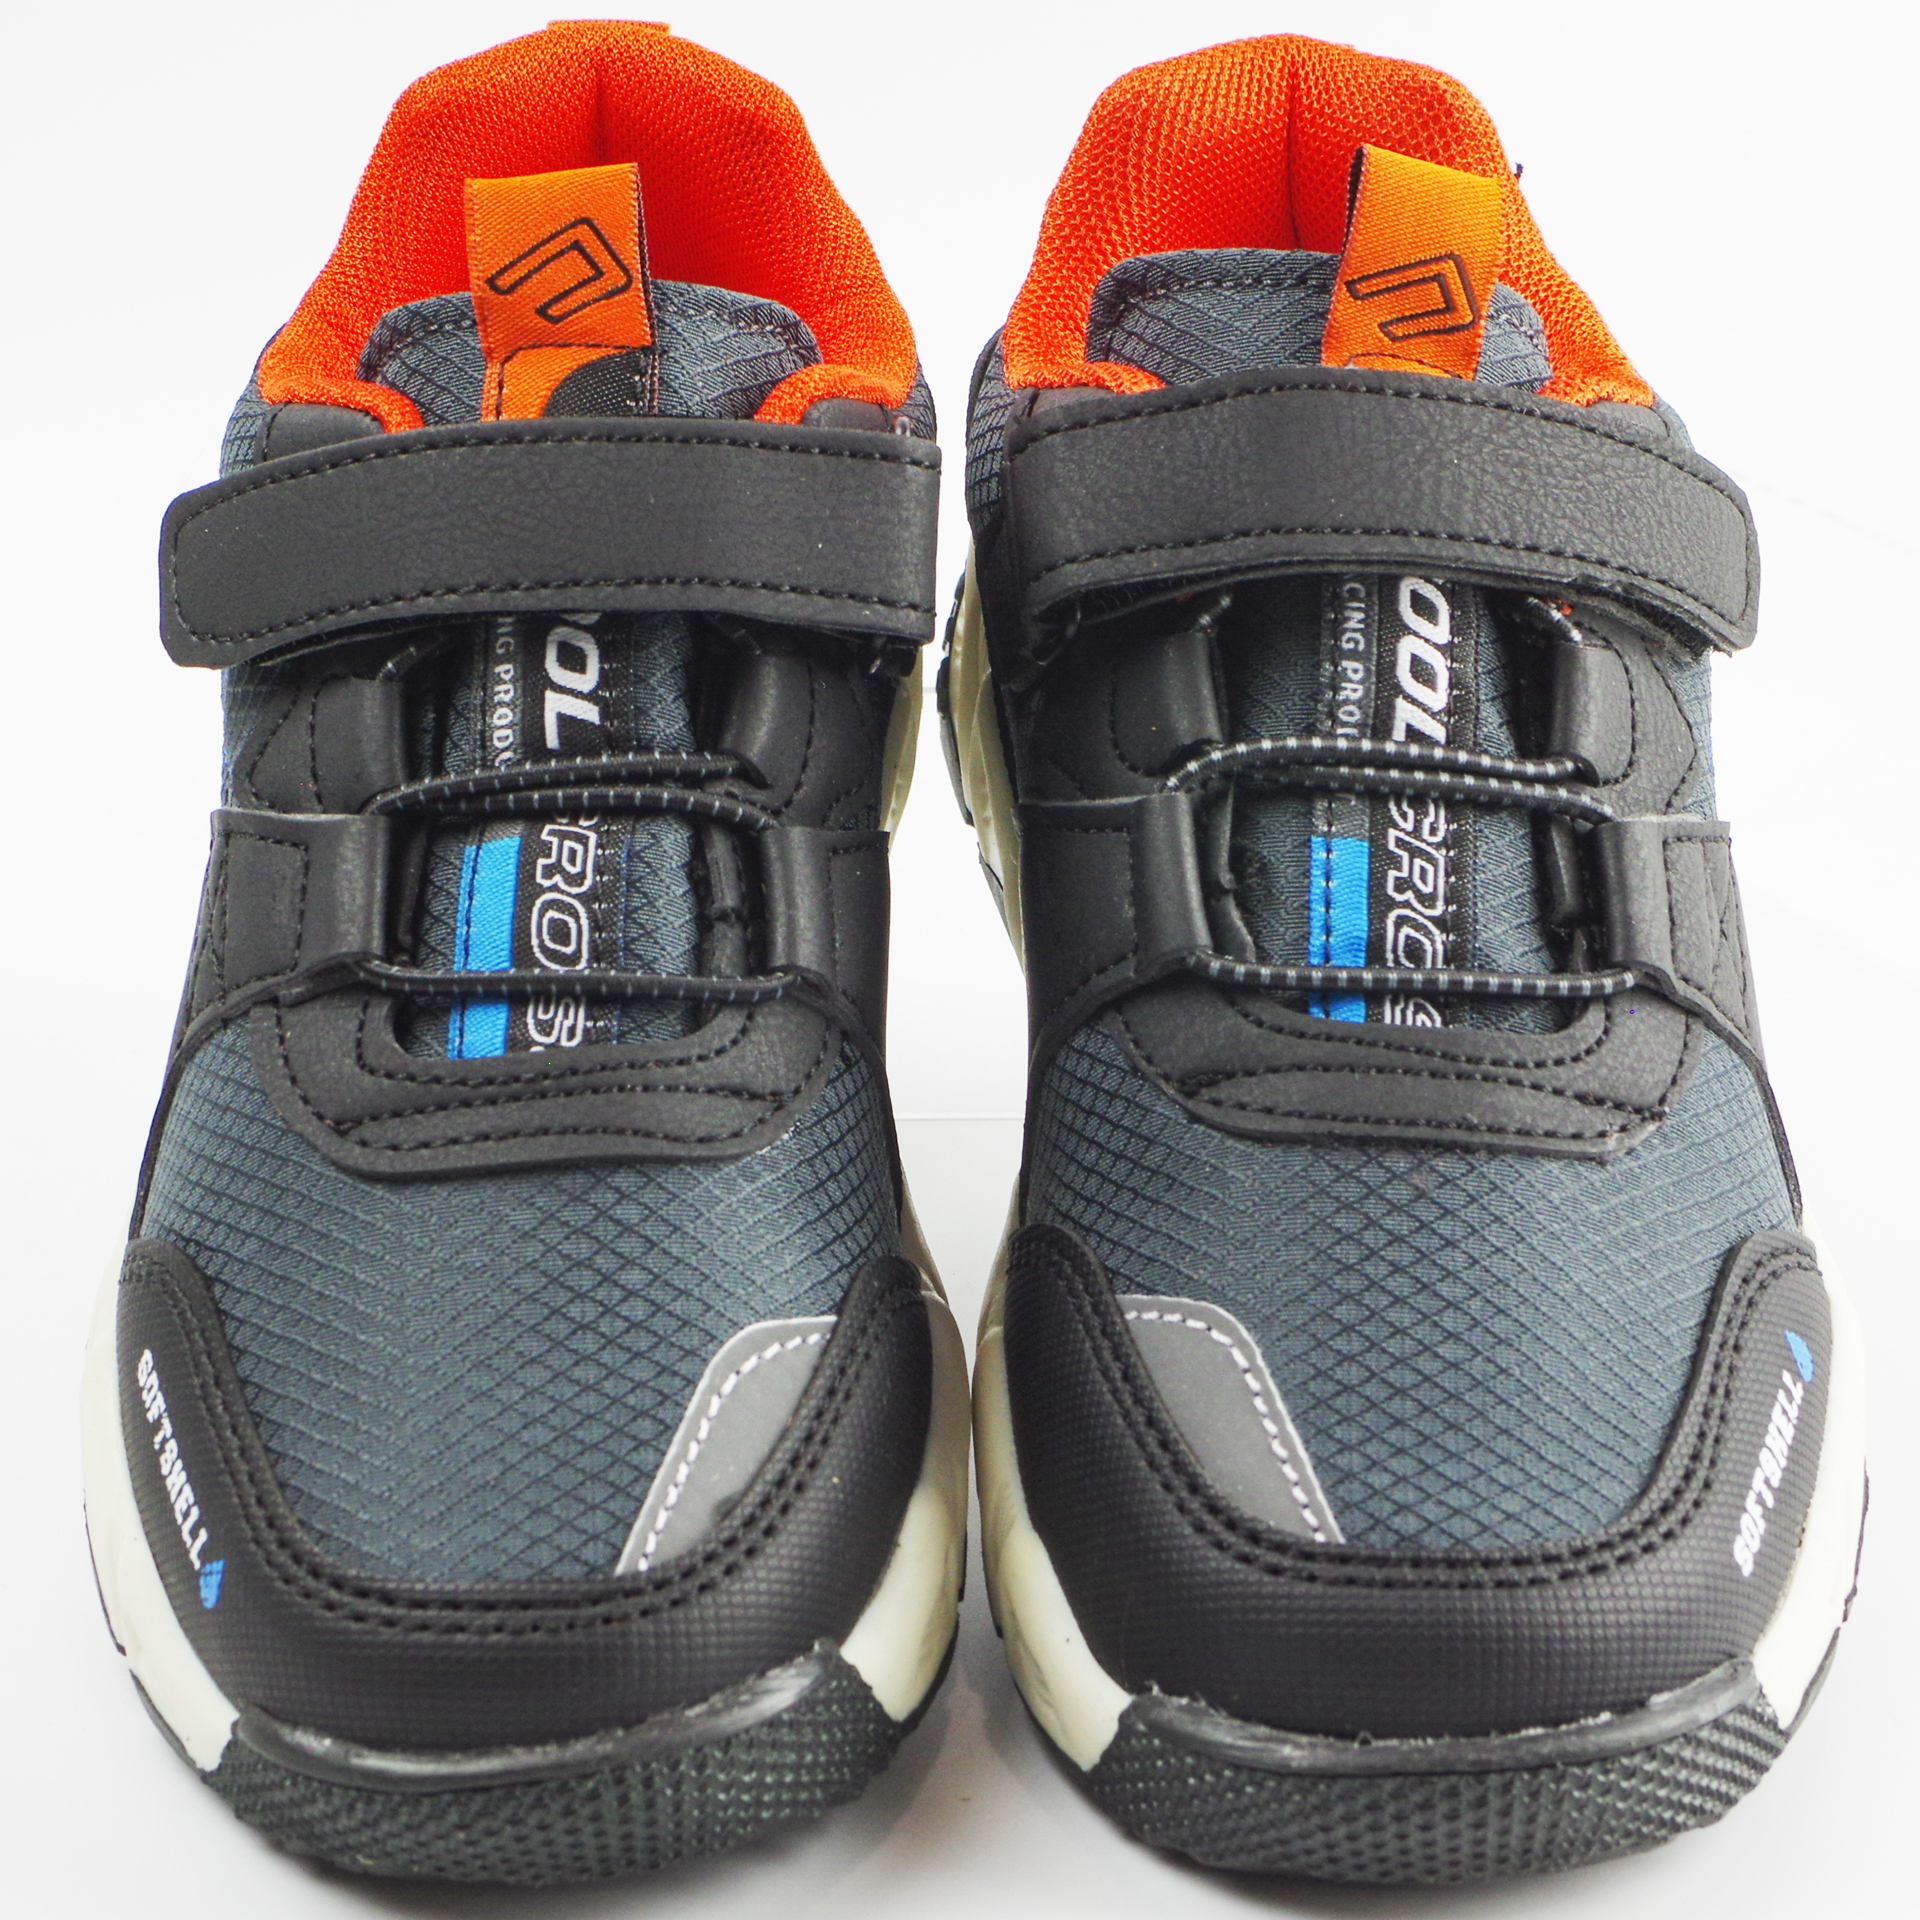 Мембранные кроссовки (2144) материал Мембрана, цвет Серый  для мальчиков 31-35 размеры – Sole Kids. Фото 4